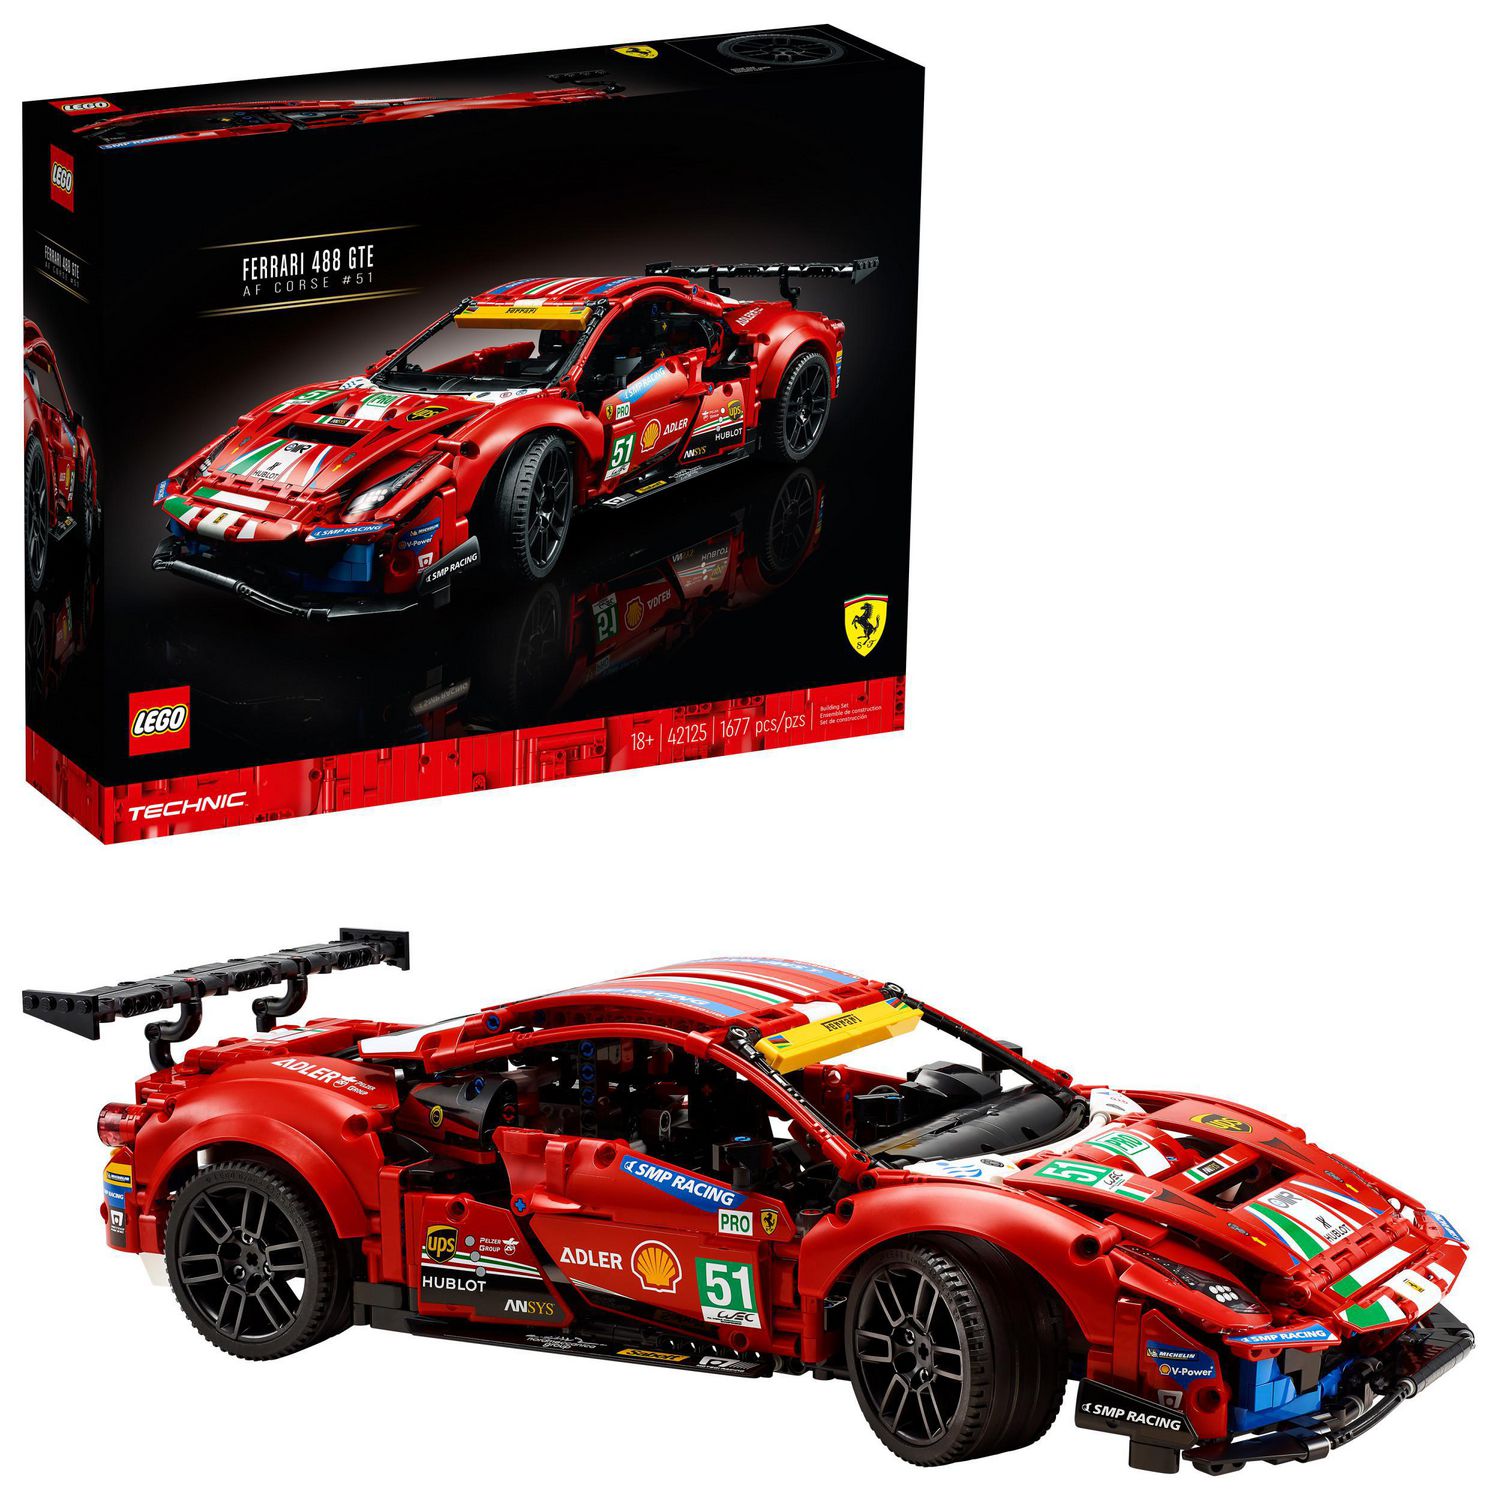 1,677 Pieces LEGO Technic Ferrari 488 GTE “AF Corse #51” 42125 Building Kit for sale online